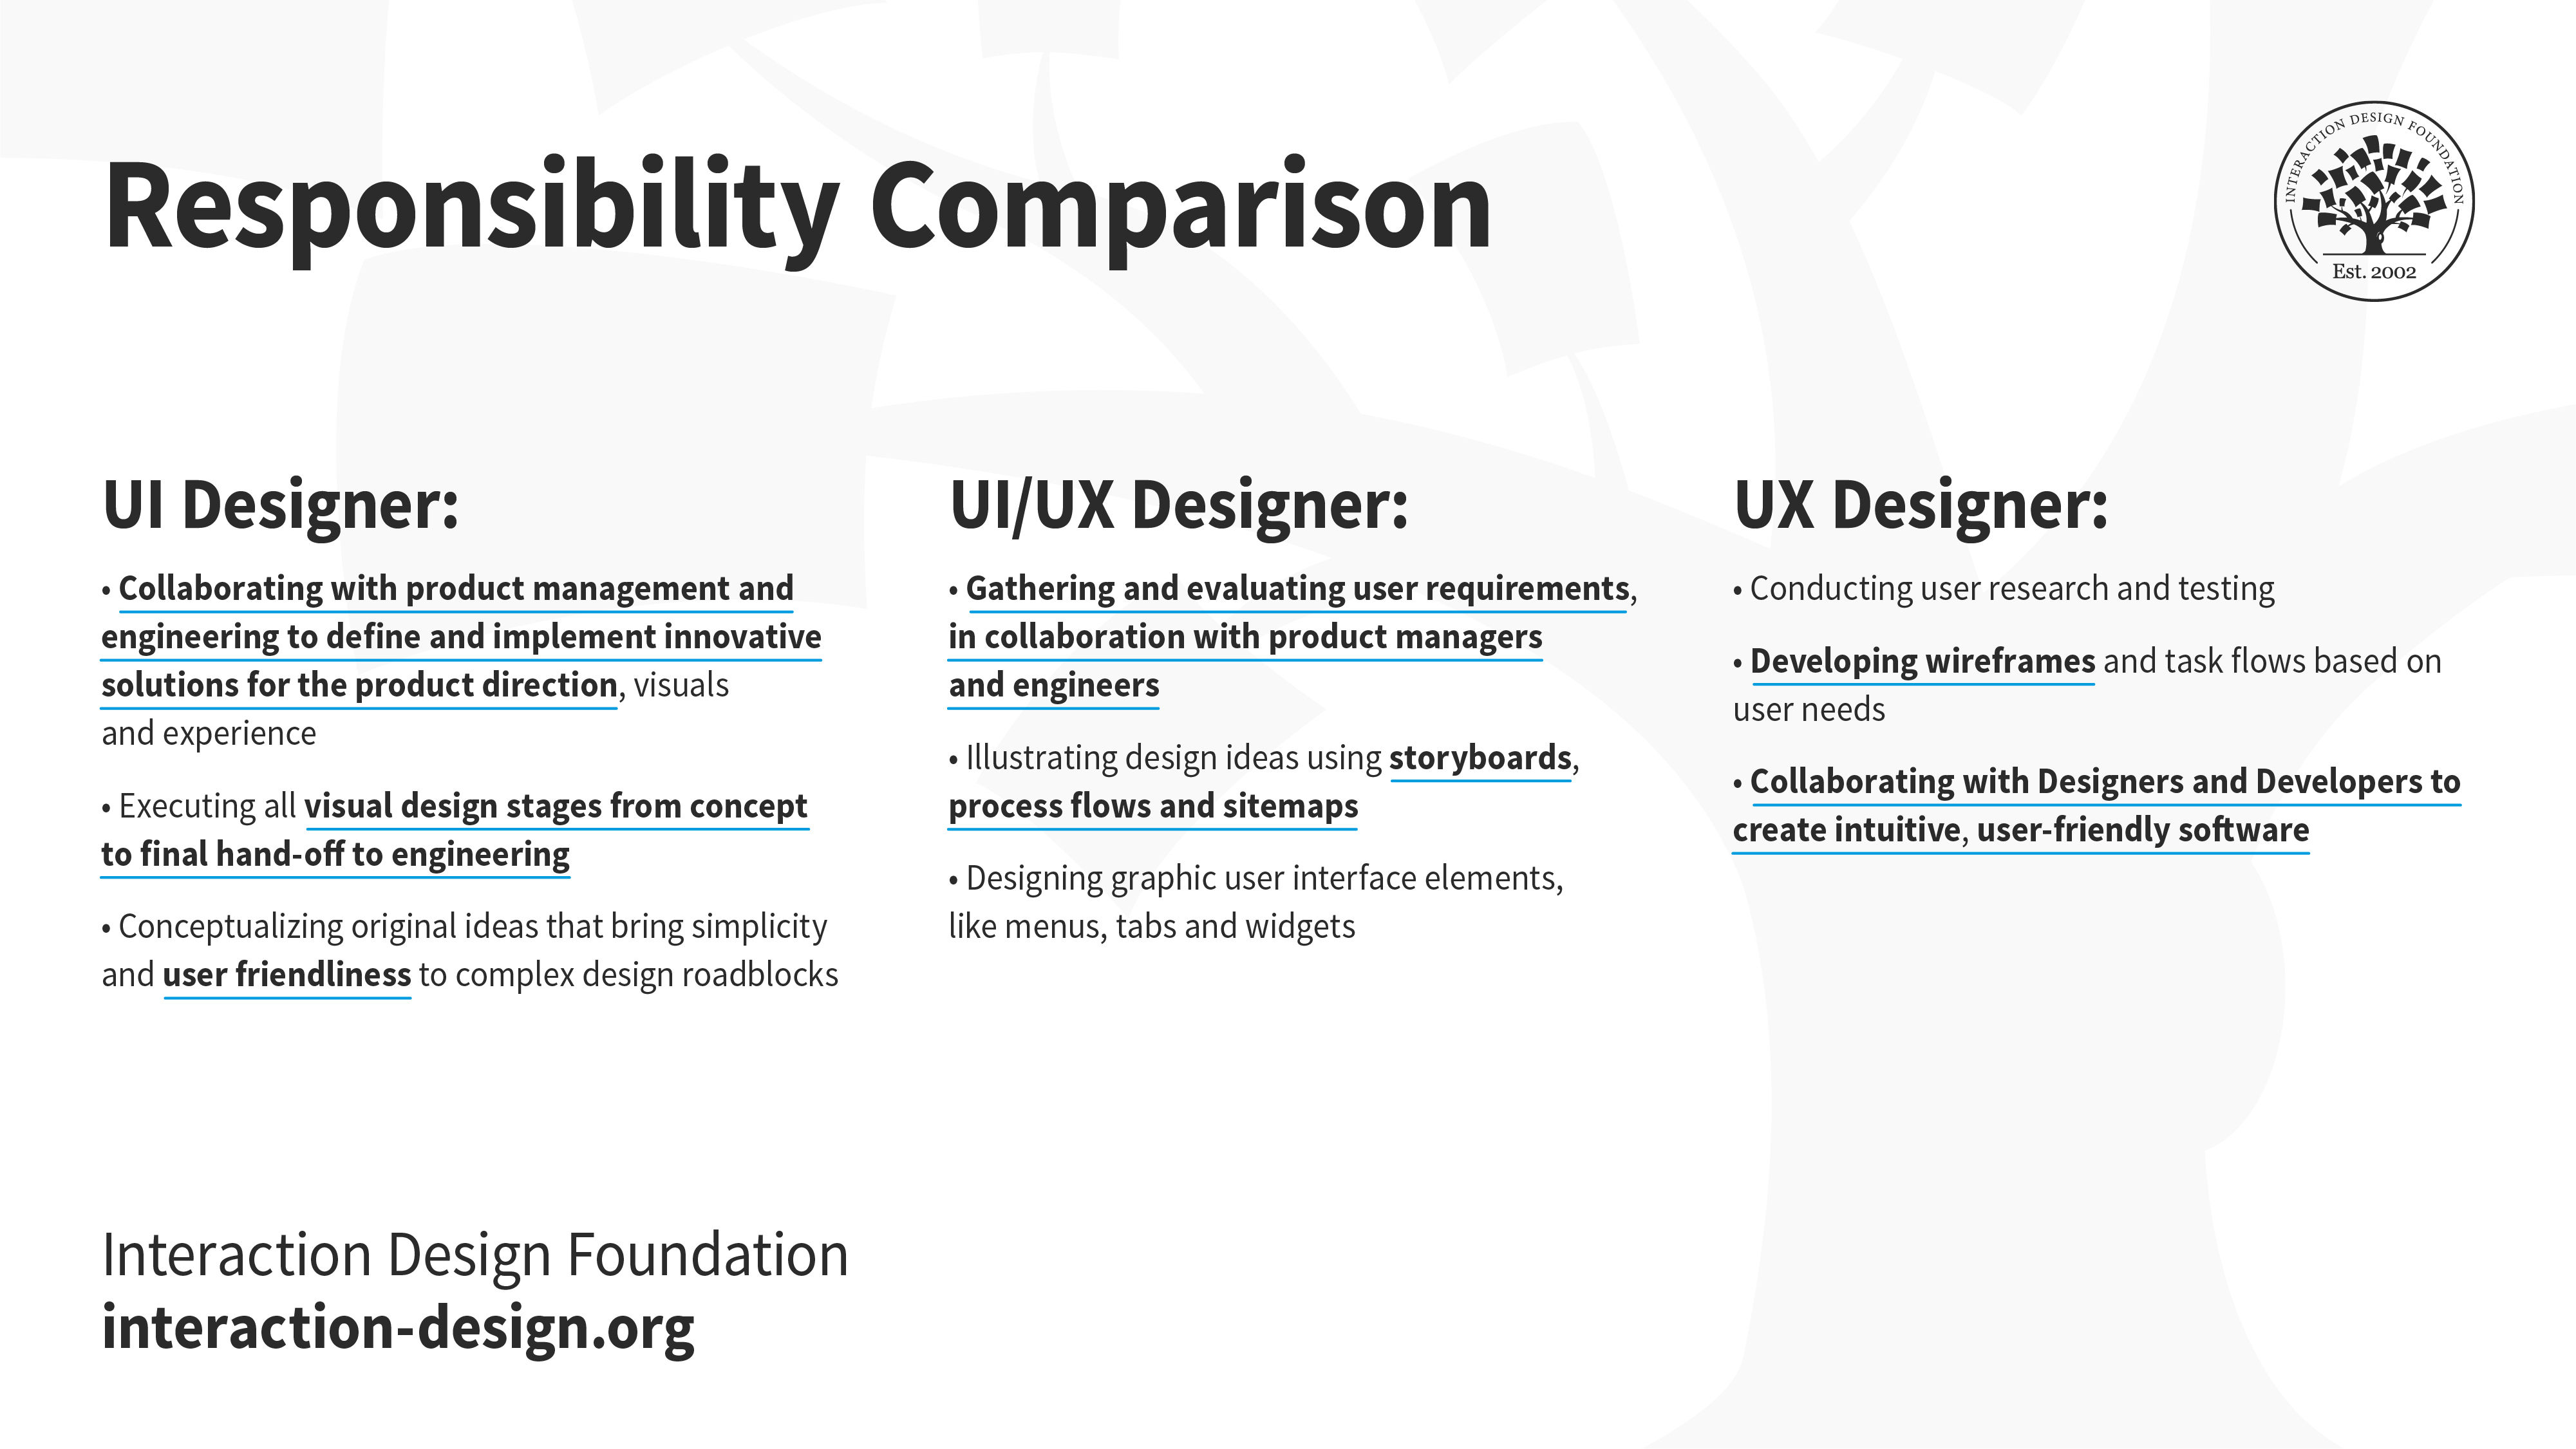 Illustration of a responsibility comparison between a UI designer, UX/UI designer and UX designer